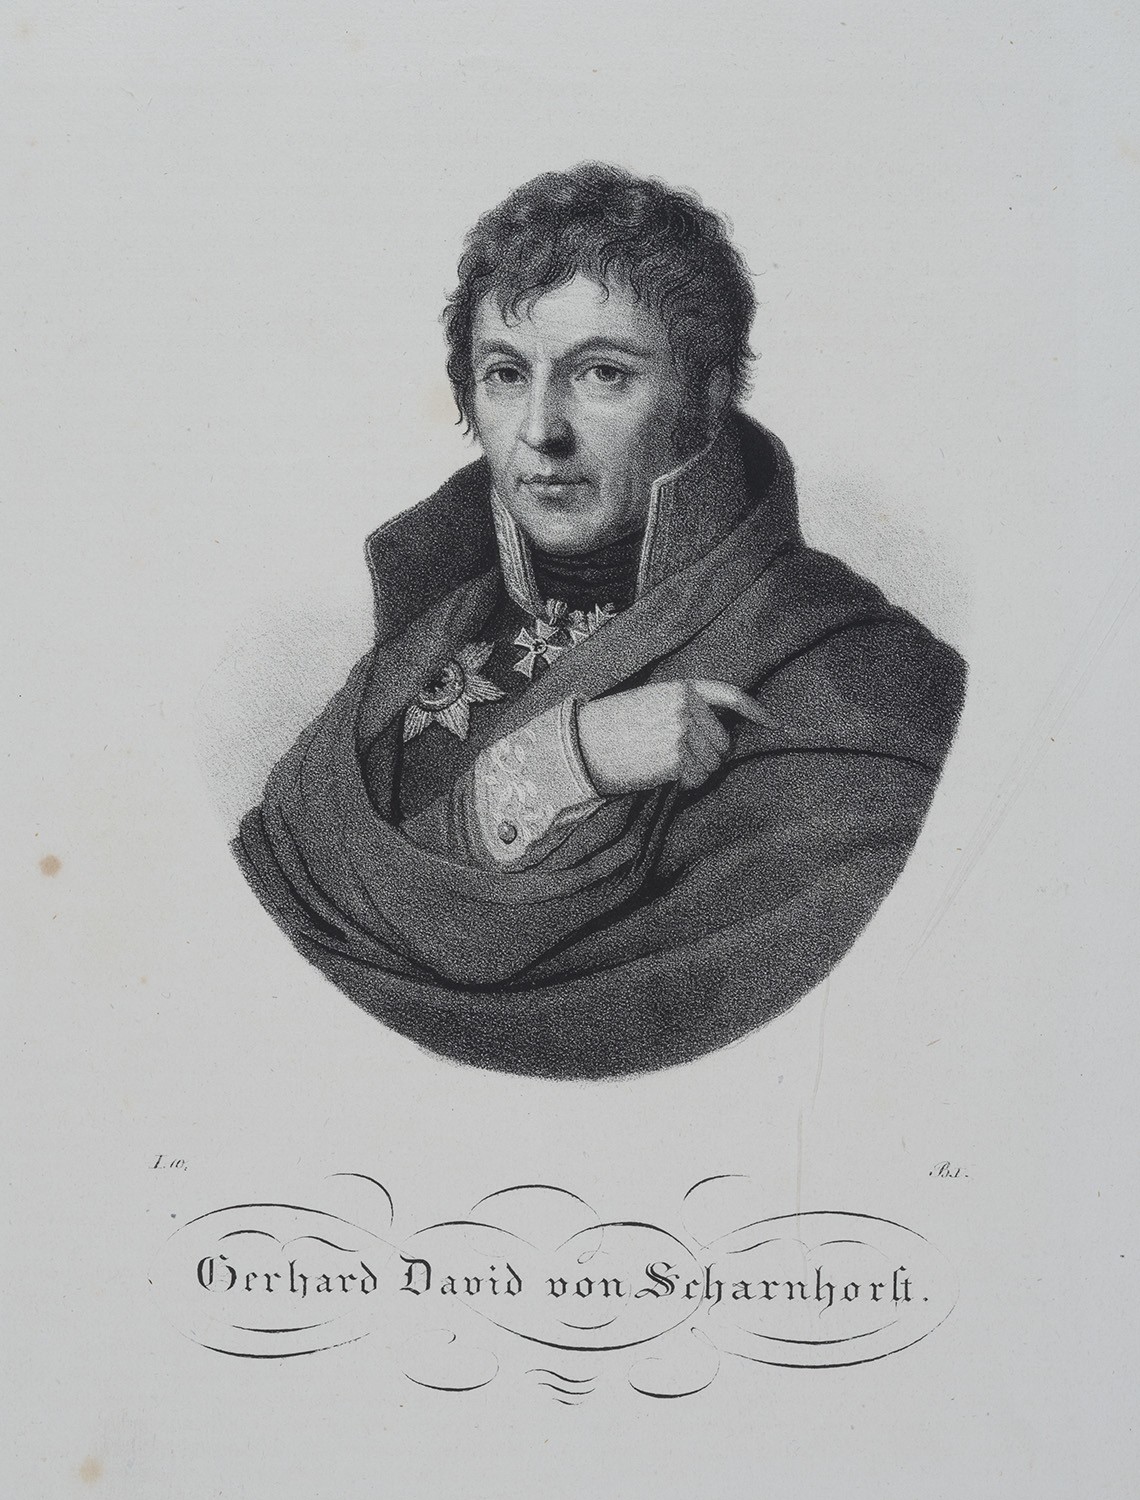 Scharnhorst, Gerhard David von (1755-1813), preuß. Generalleutnant (Landesgeschichtliche Vereinigung für die Mark Brandenburg e.V., Archiv CC BY)